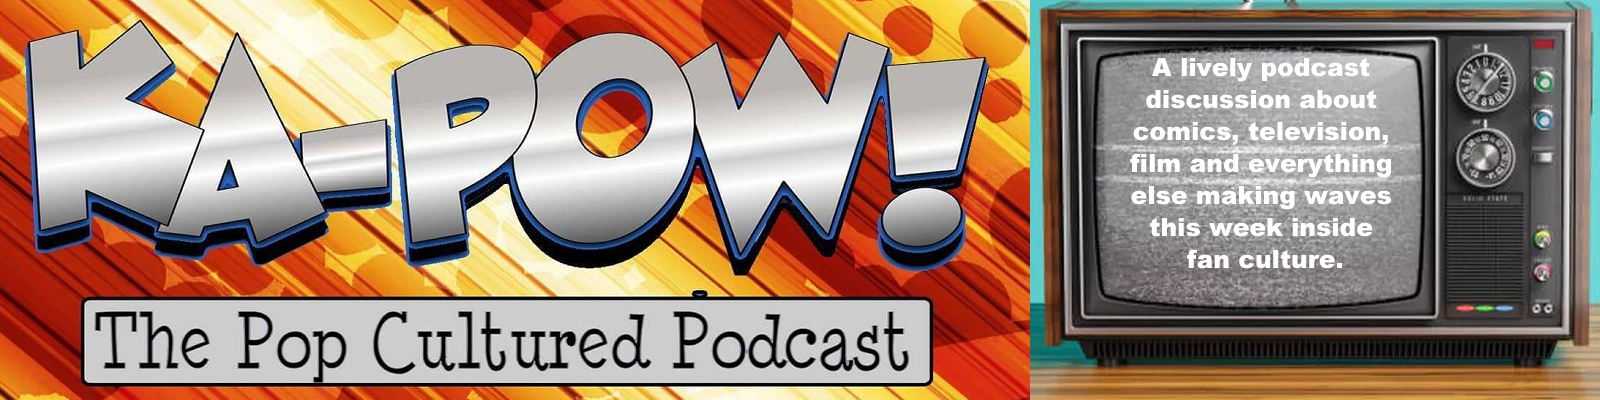 KA-POW! The Pop Cultured Podcast